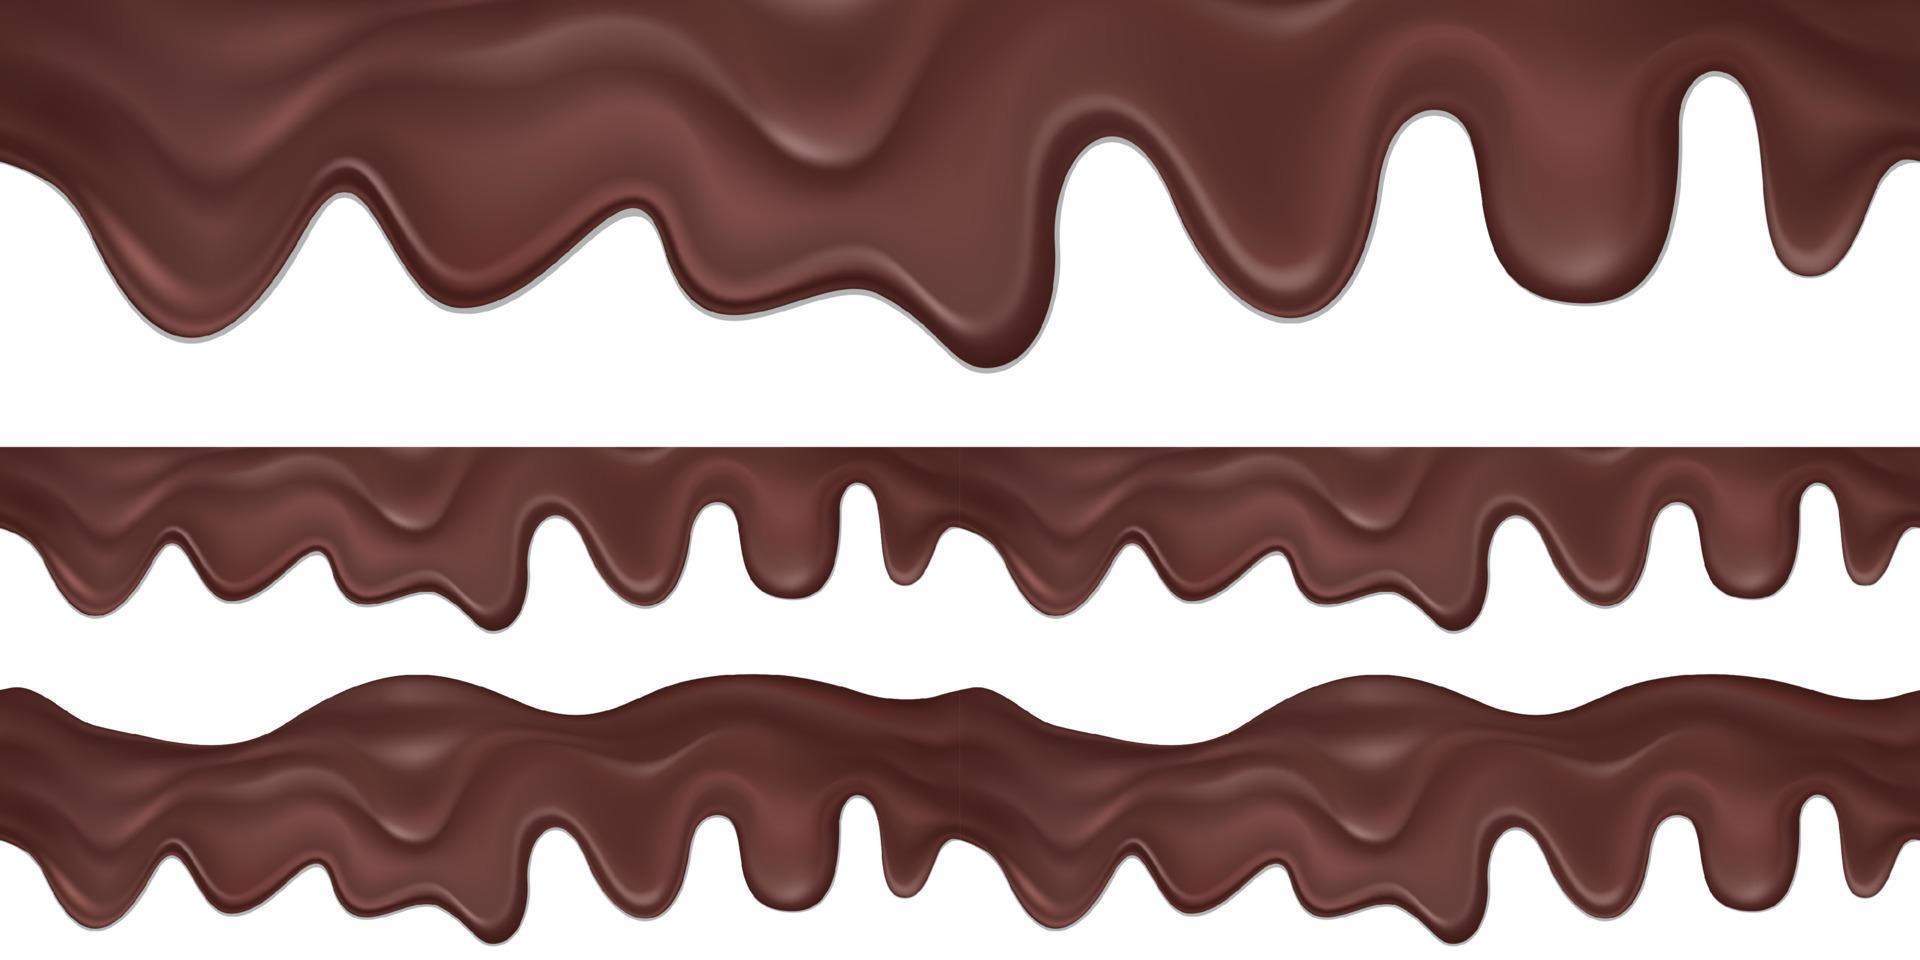 borda horizontal do vetor sem costura de líquido gotejando chocolate escuro. decoração de embalagens de doces isolada no fundo branco.